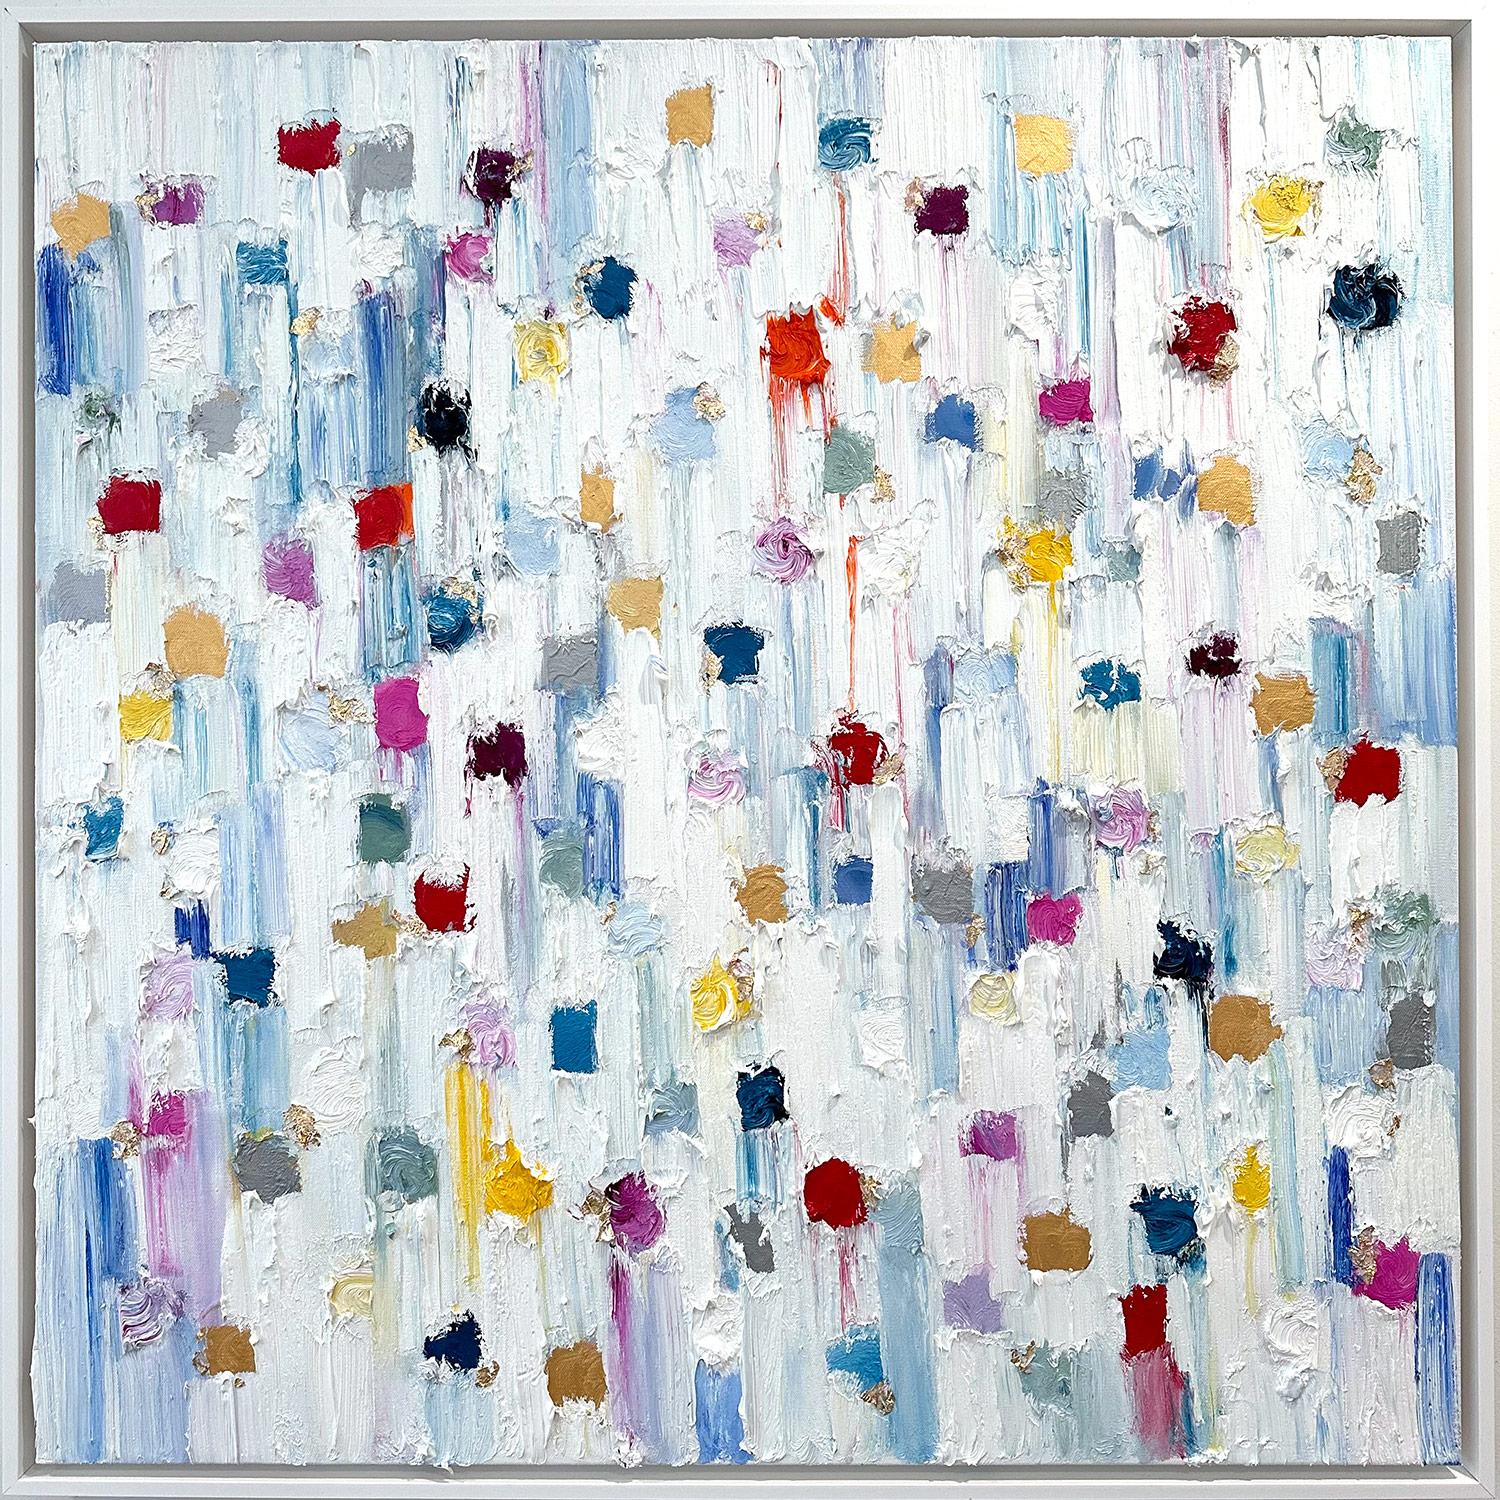 Abstract Painting Cindy Shaoul - "Dripping Dots - Cannes" Peinture à l'huile contemporaine multicolore sur toile encadrée